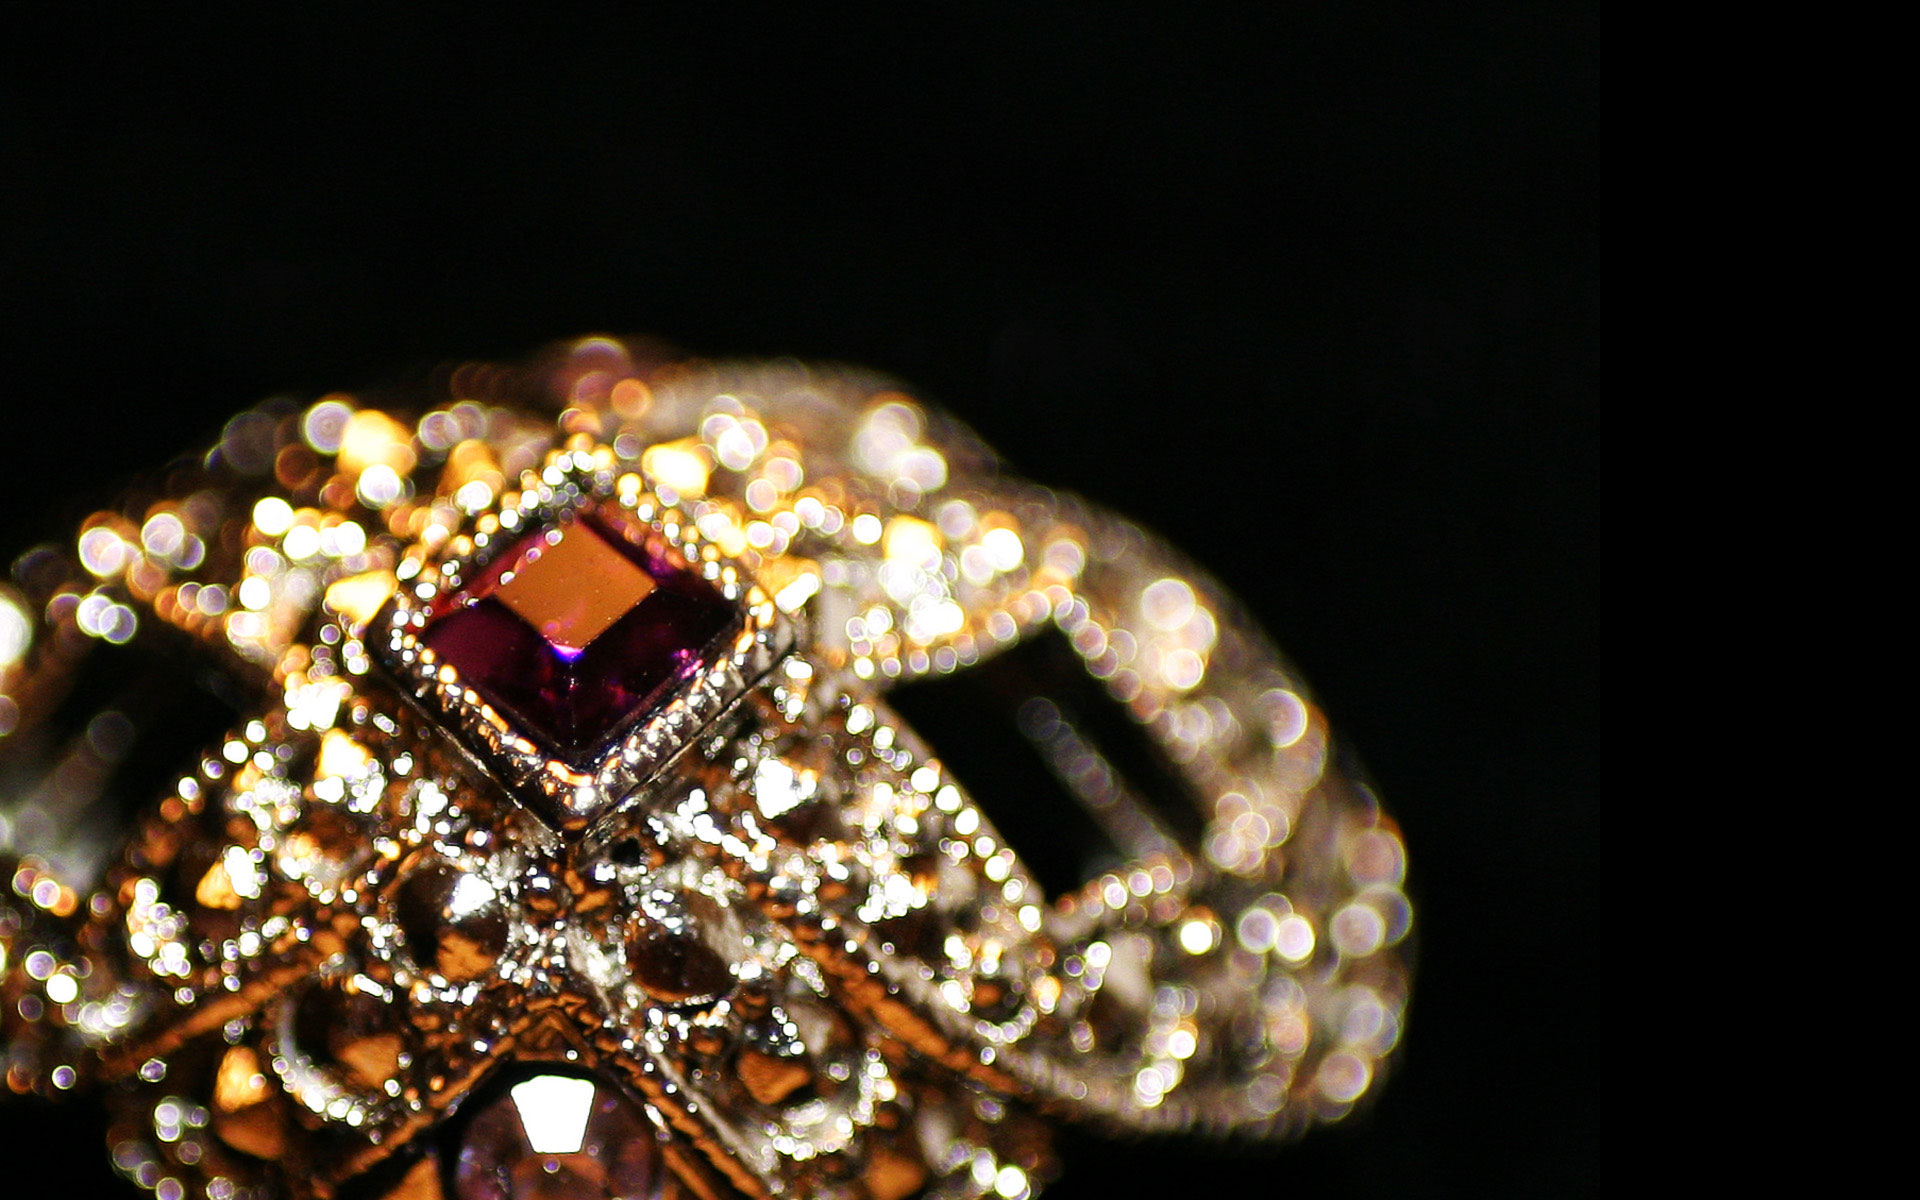 bellissimi sfondi di gioielli,diamante,pietra preziosa,macrofotografia,oro,metallo